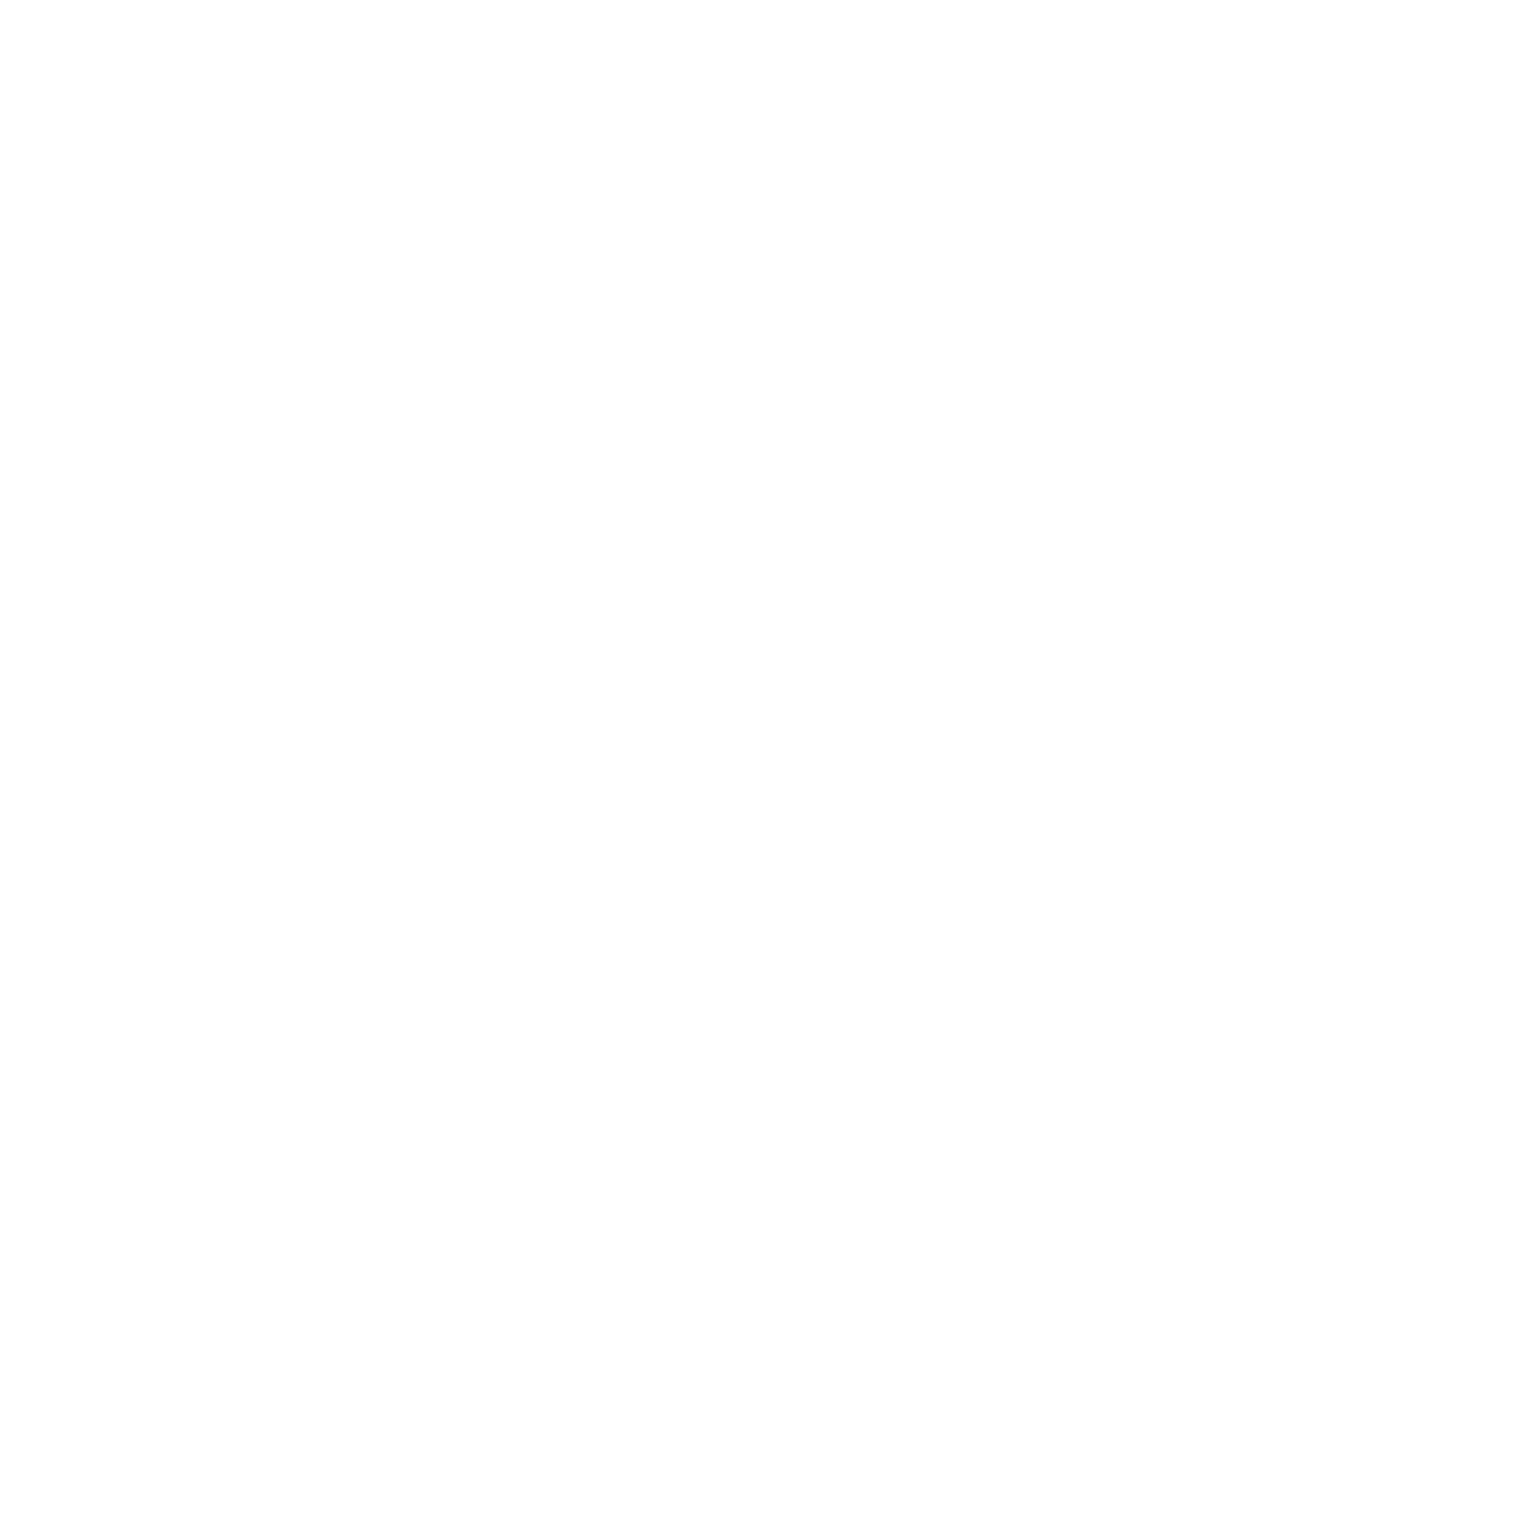 Deutsche Bank logo pour fonds sombres (PNG transparent)